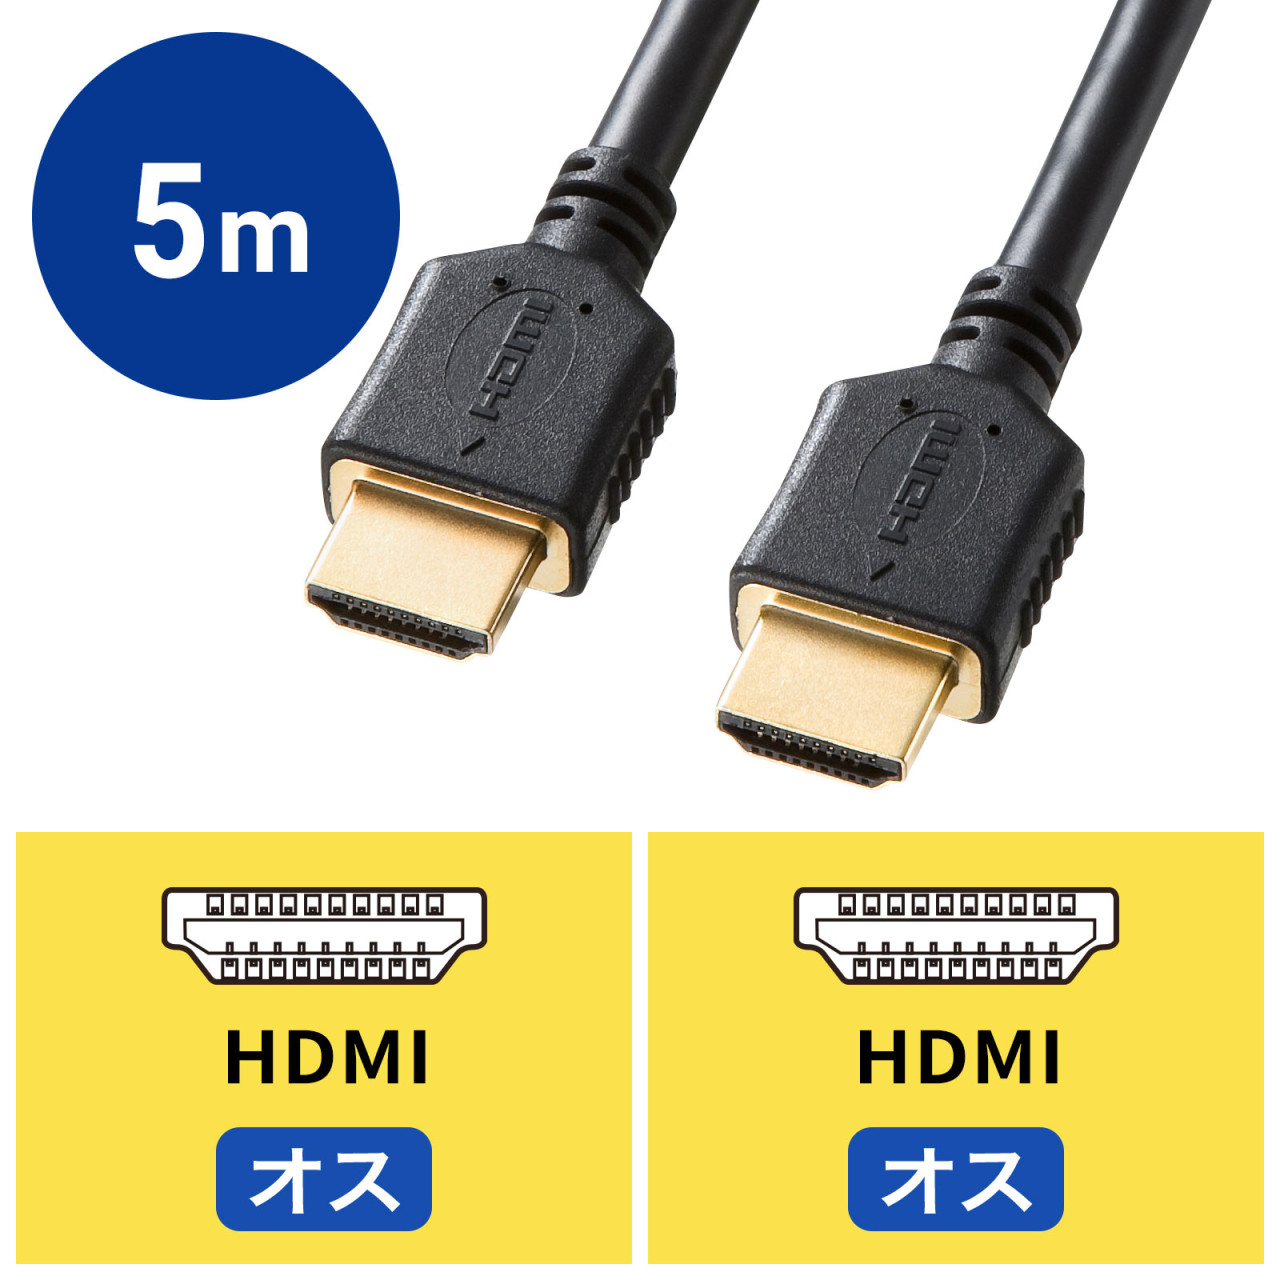 ＼11 4〜11 11限定ポイント5倍！／HDMI キャプチャーボード HDMIパススルー出力 3.5mm音声出力 MIC音声入力搭載 USB2.0 1080P 30Hz ゲームキャプチャー ビデオキャプチャカード ゲーム実況生配信 画面共有 録画 軽